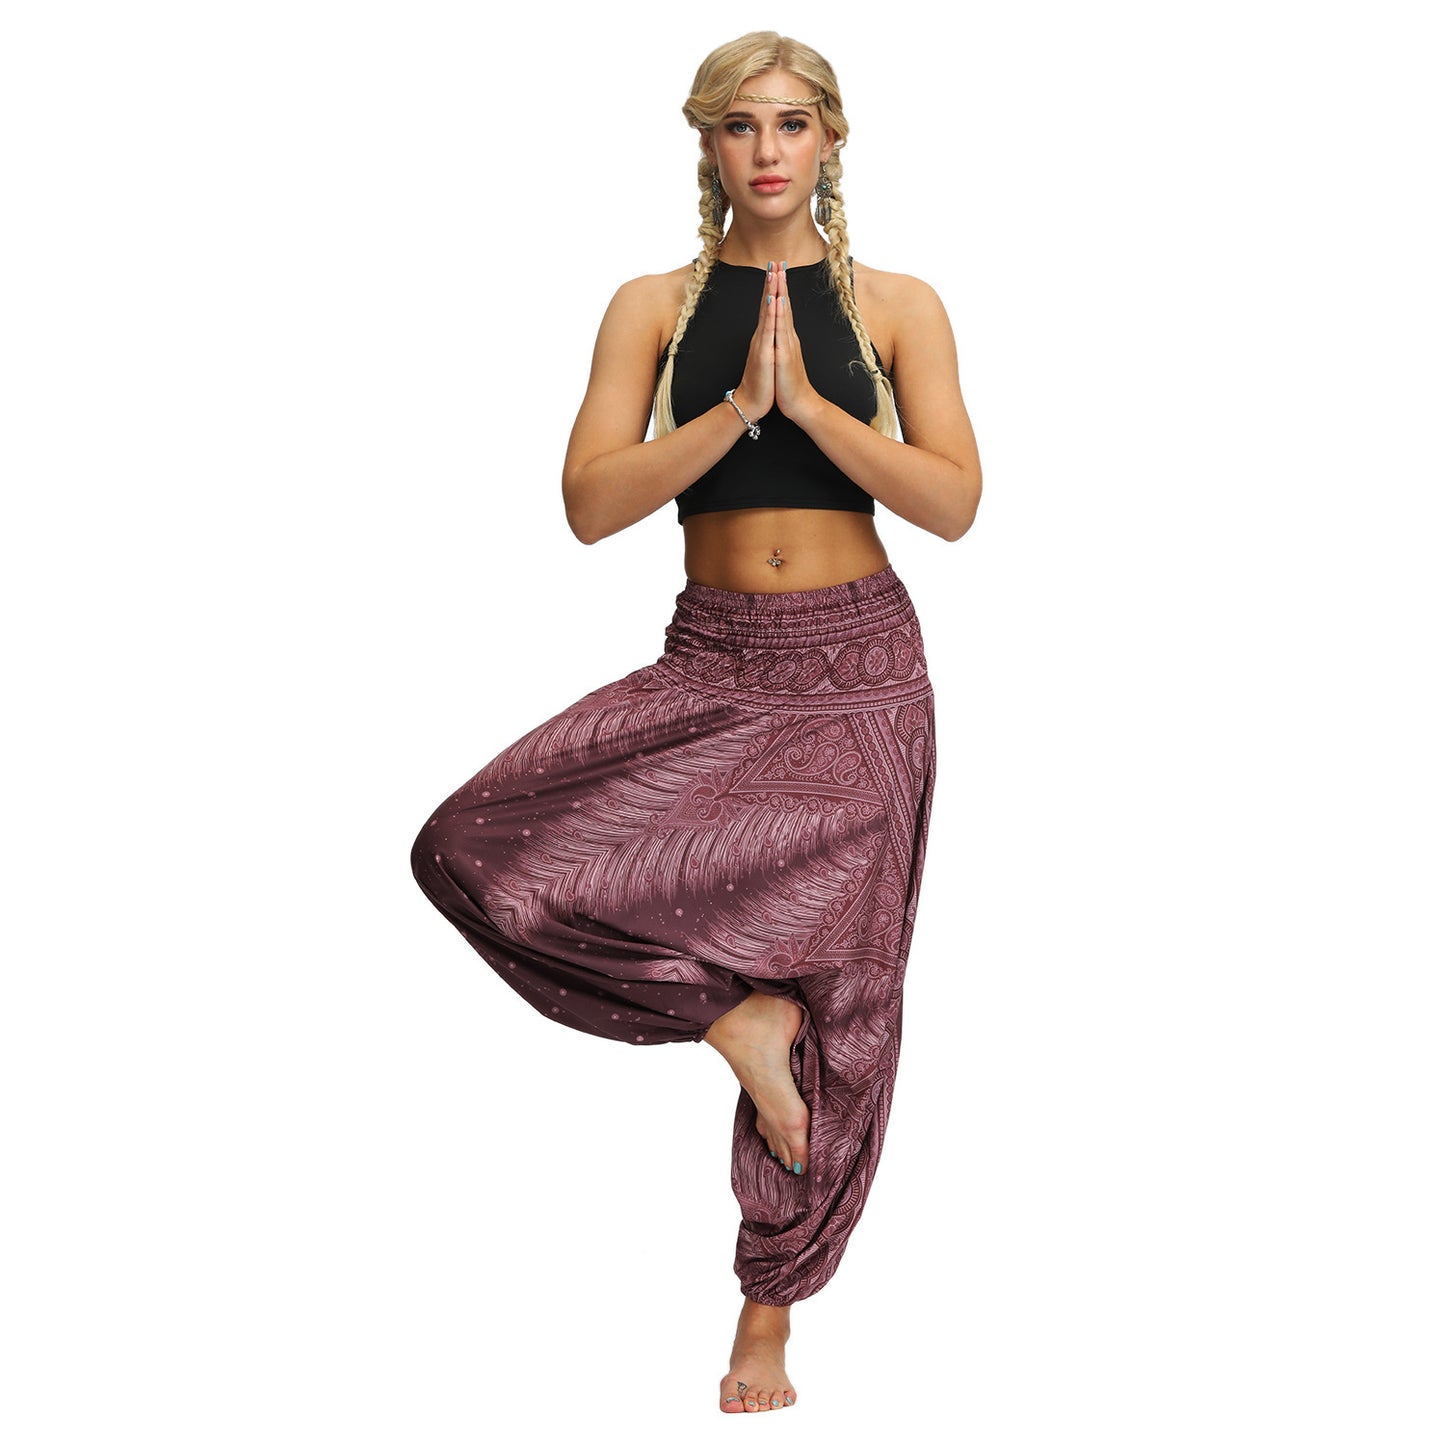 Bohemian Digital Printing Yoga Pants